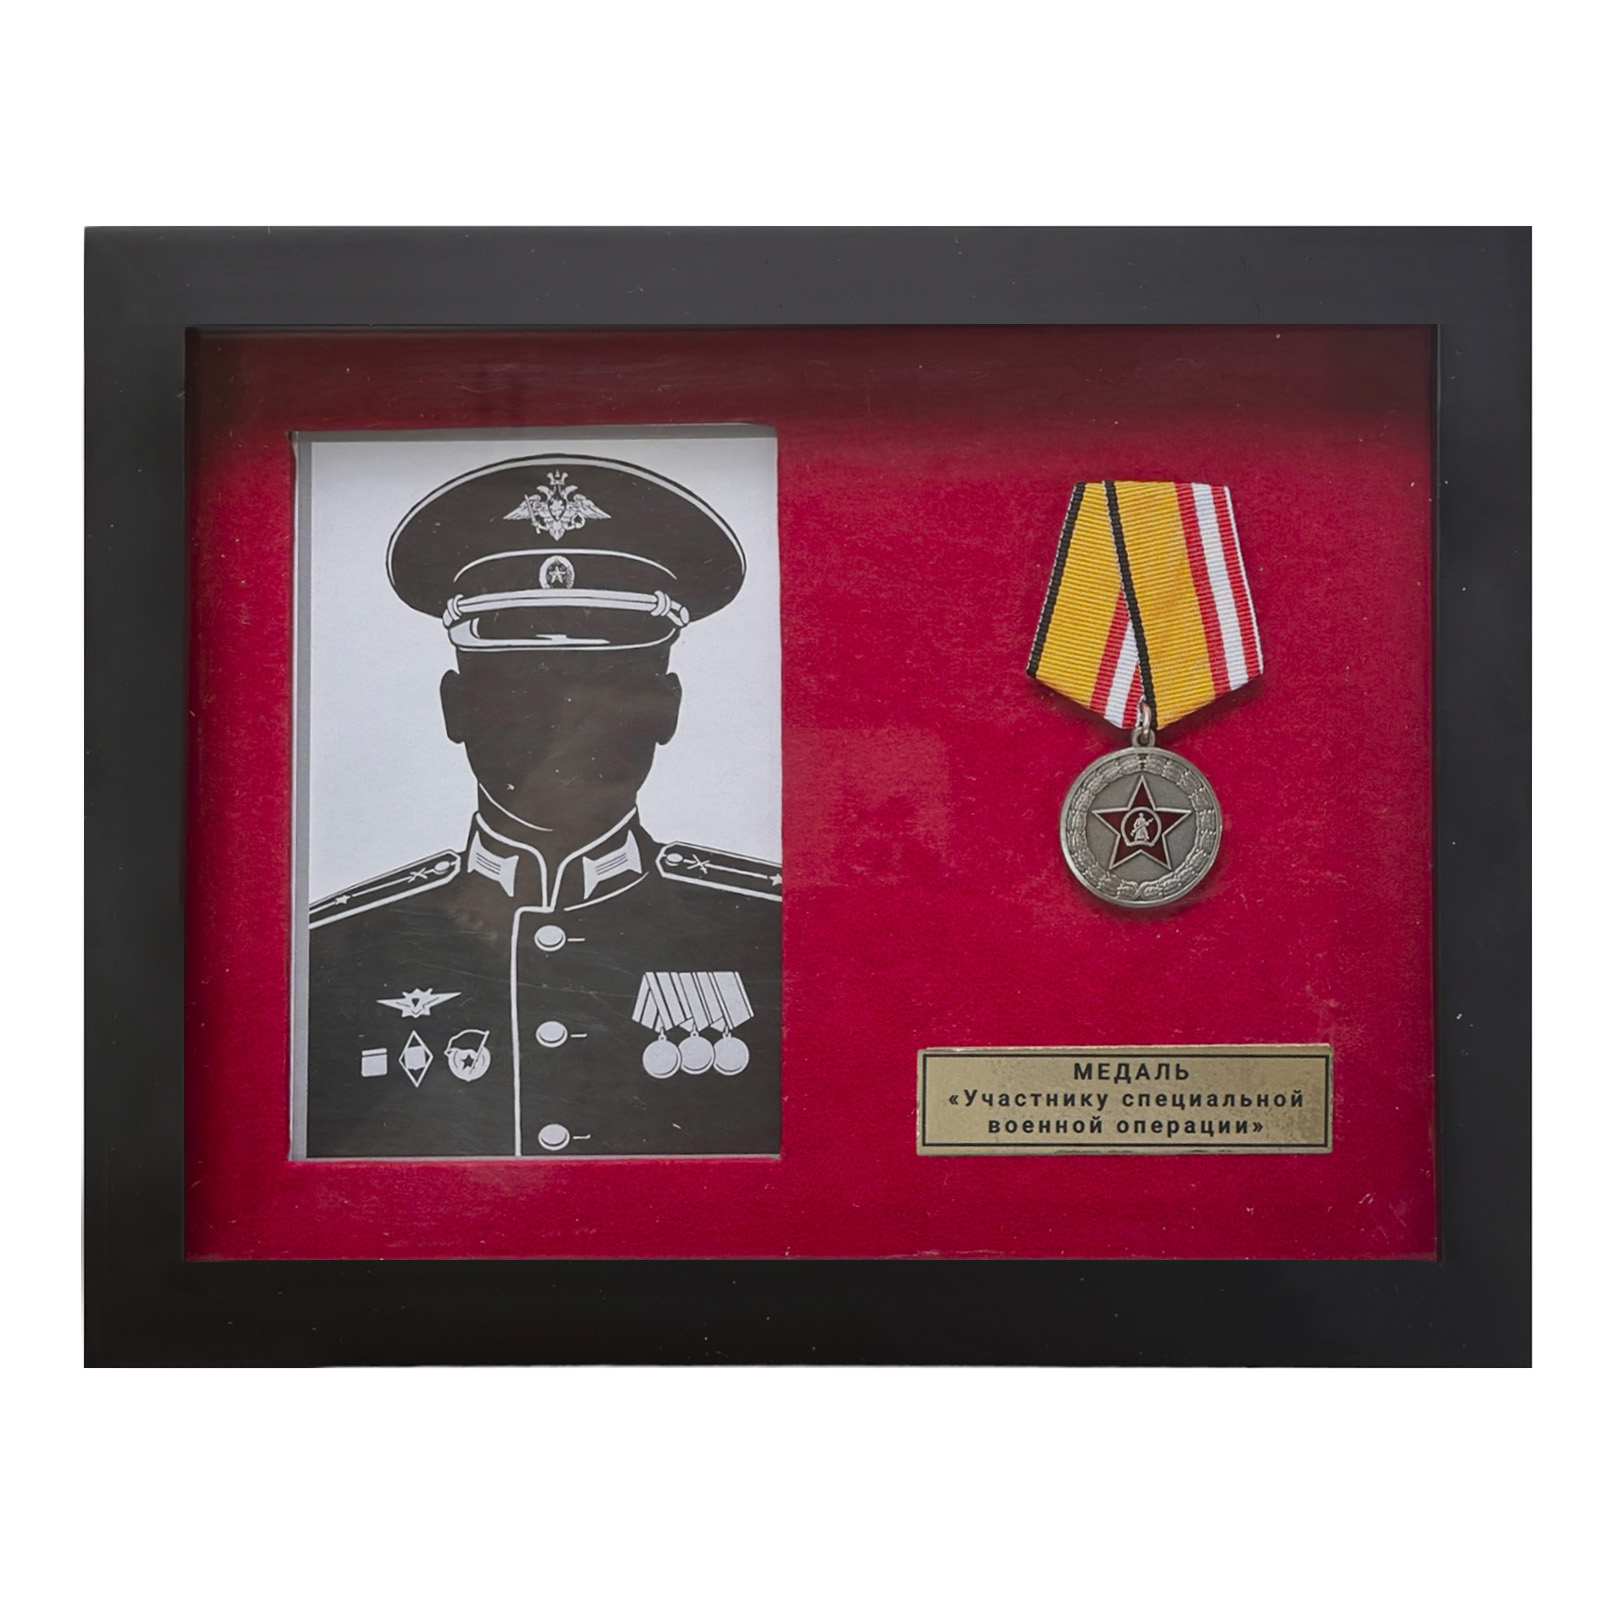 Купить памятный планшет с медалью "Участнику специальной военной операции"